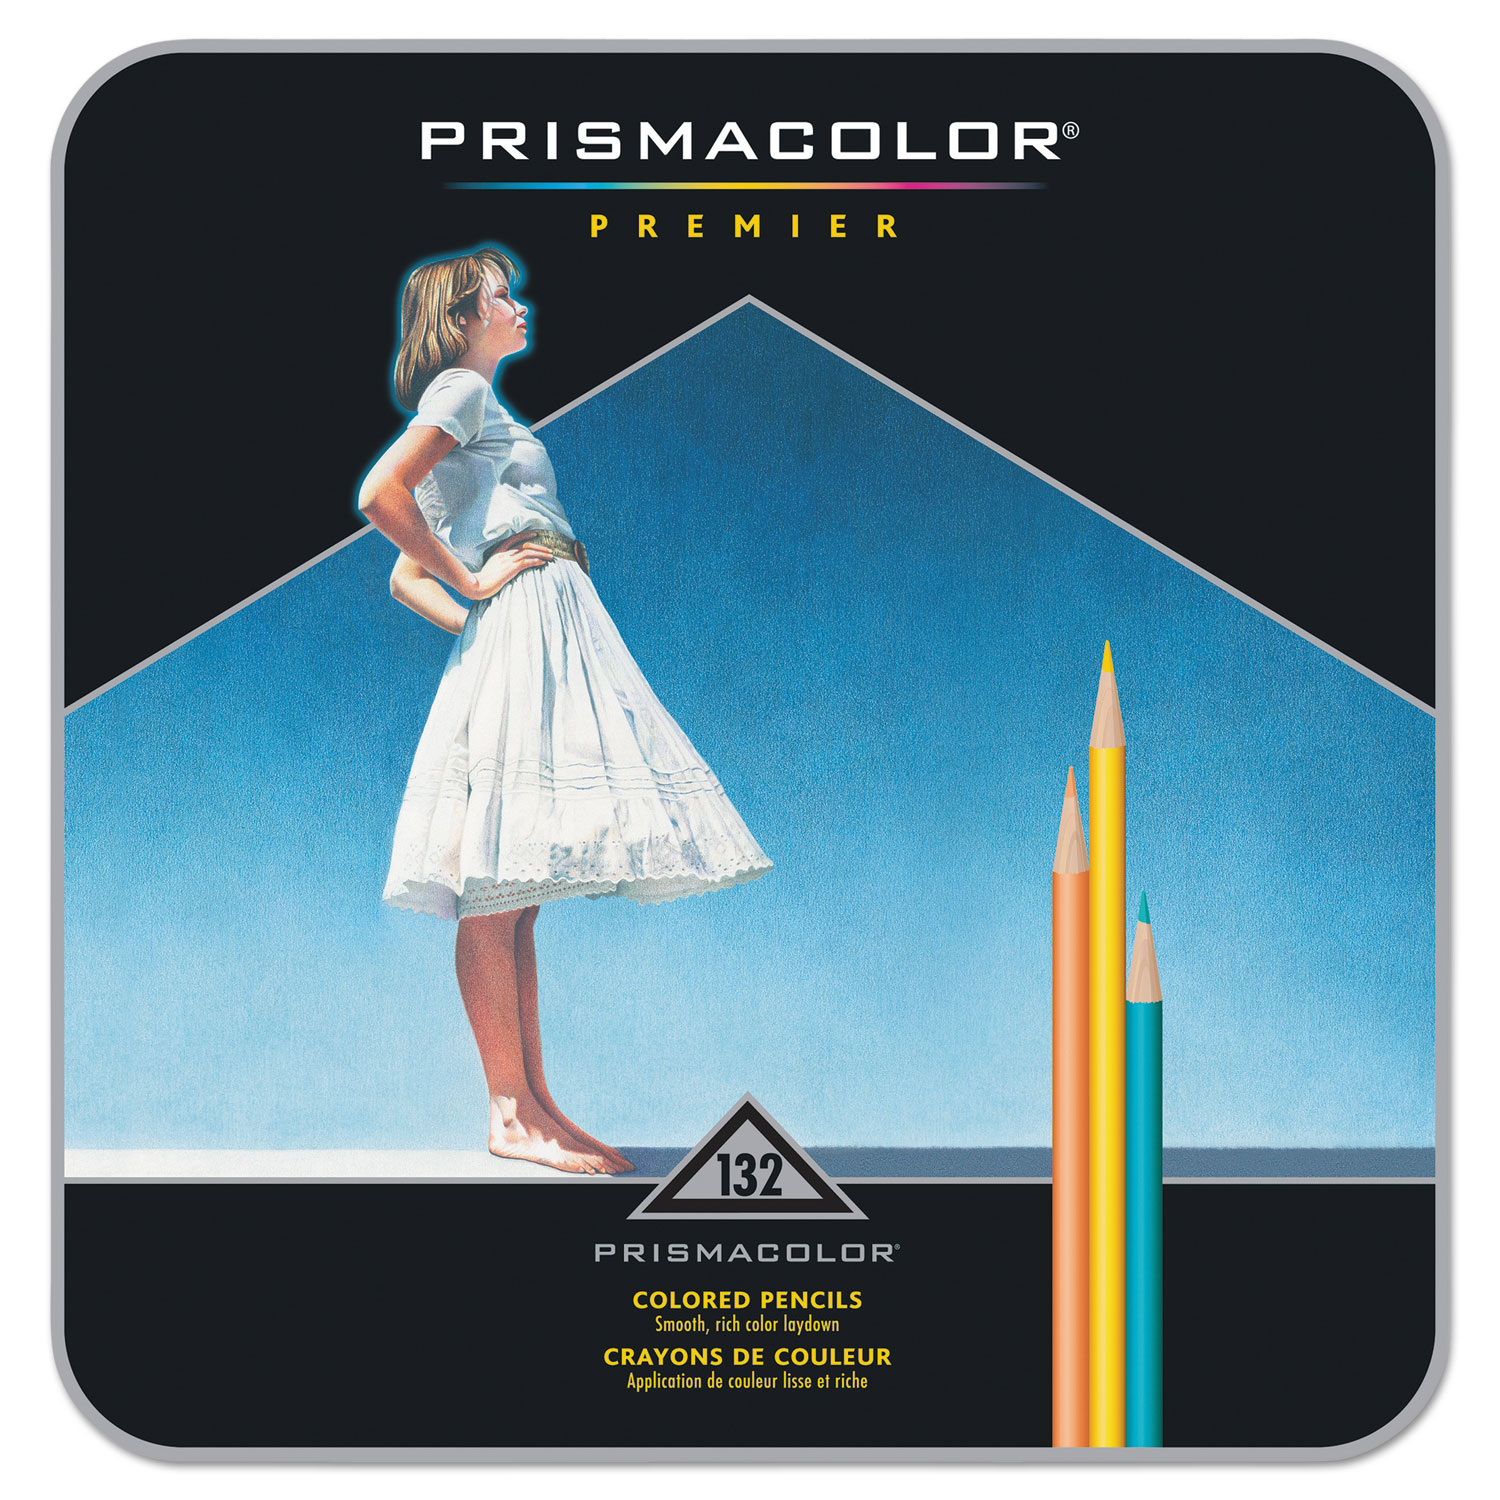  Prismacolor Premier Colored Pencils, Black Lead/Black Barrels,  12 Pack : Everything Else